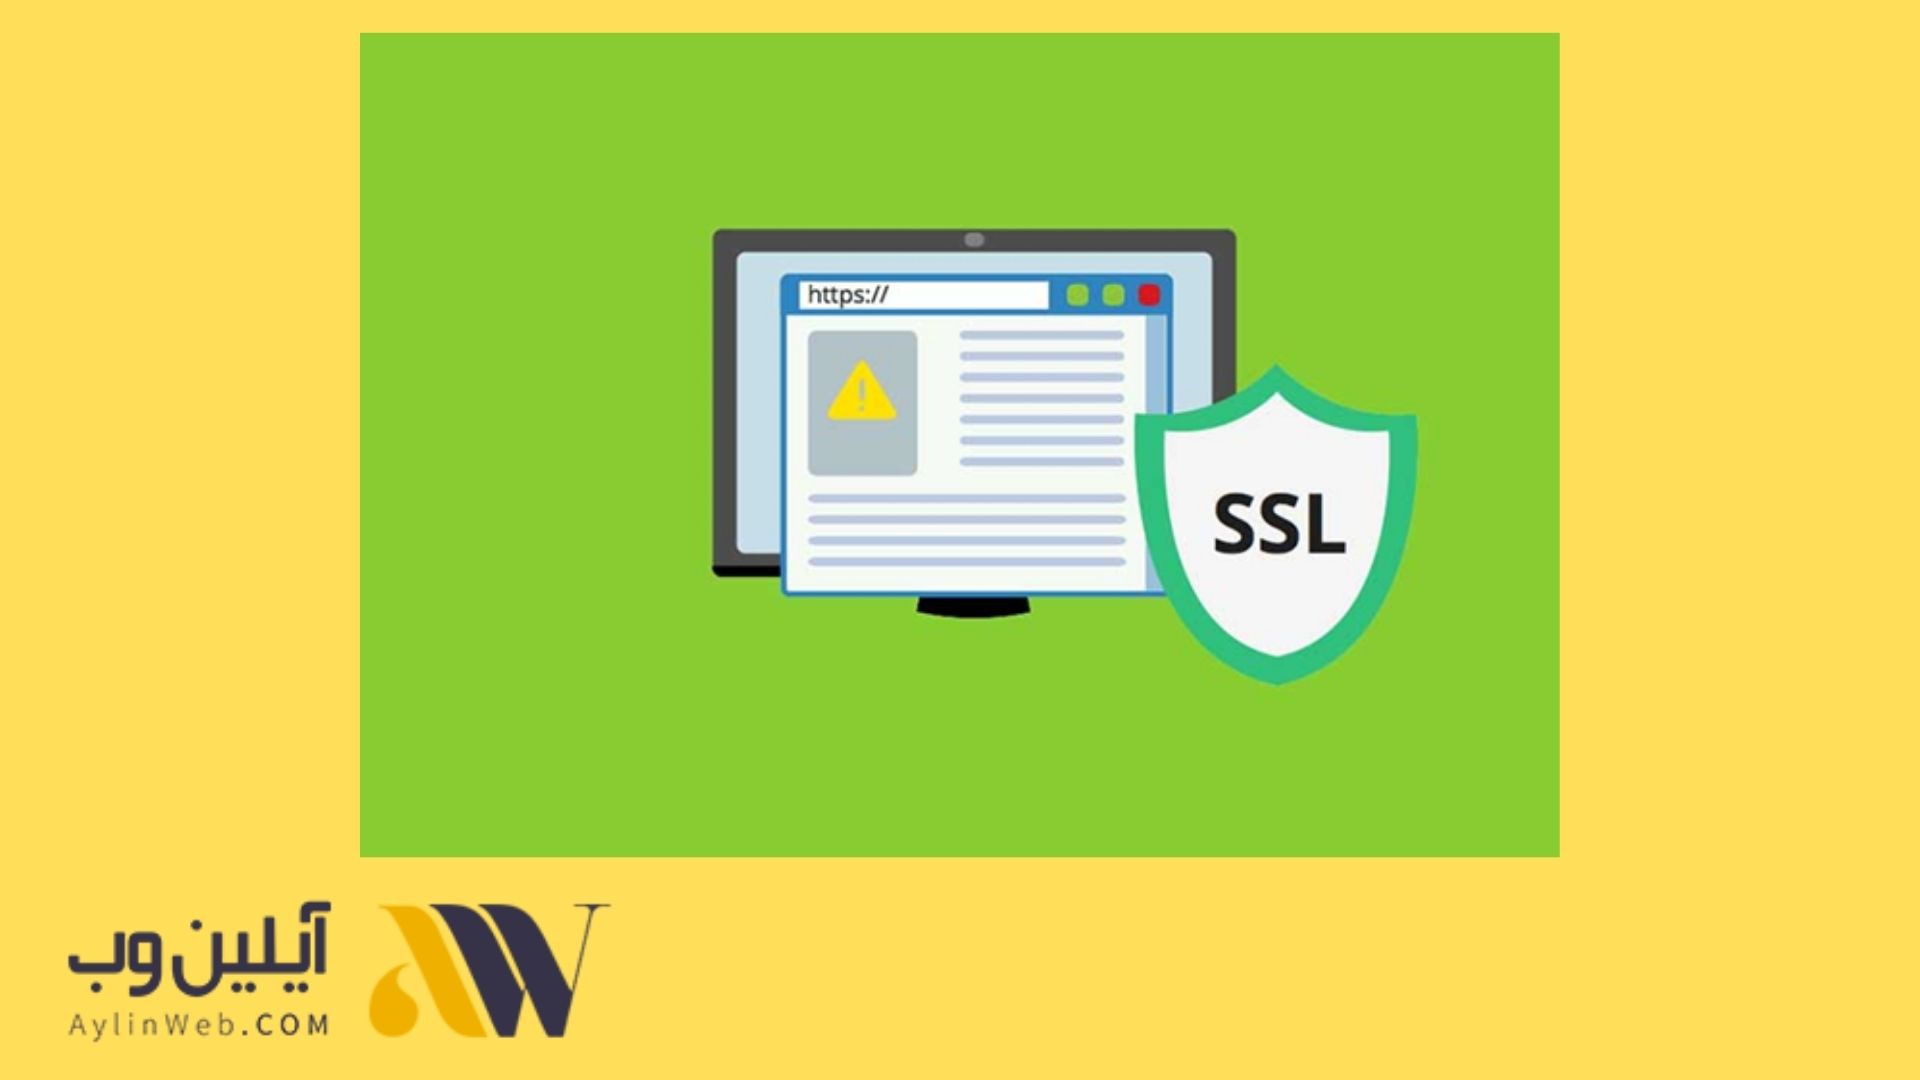 پروتکل HTTPS یا گواهینامه SSL چیست و به چه منظور به کار برده می شود؟